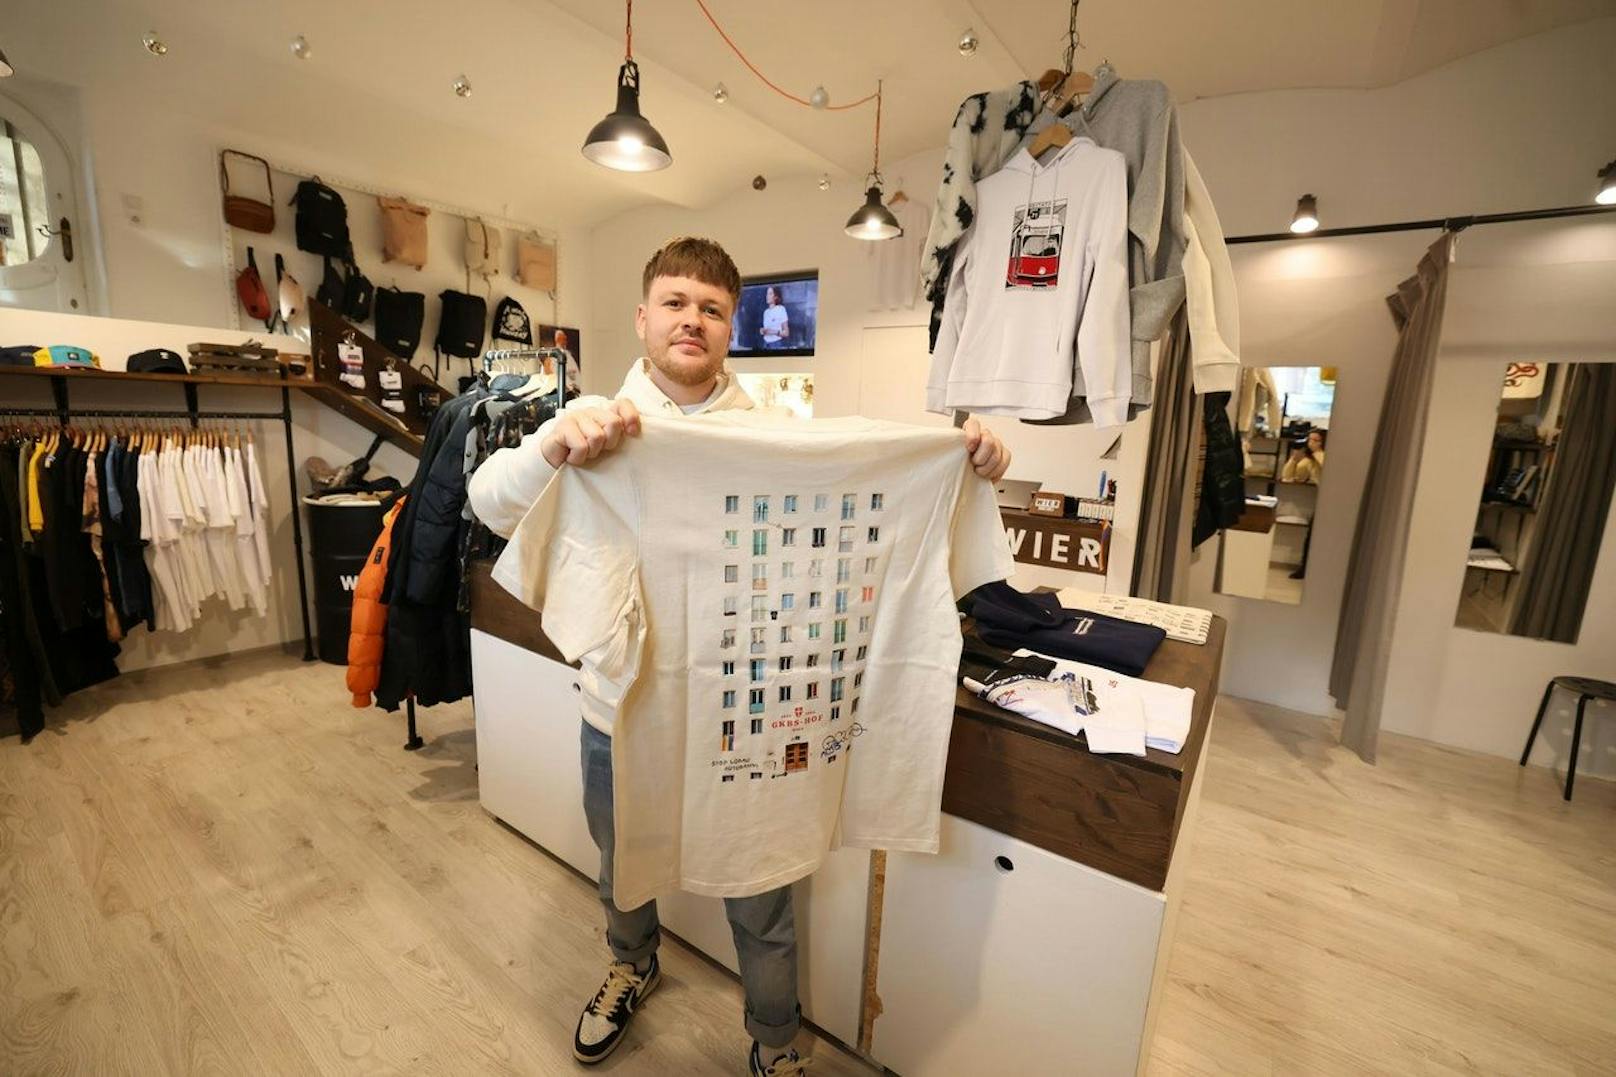 Designer Merlin Resch bildet auf seinem neuen Shirt die "Realität des Wiener Gemeindebaus" ab.